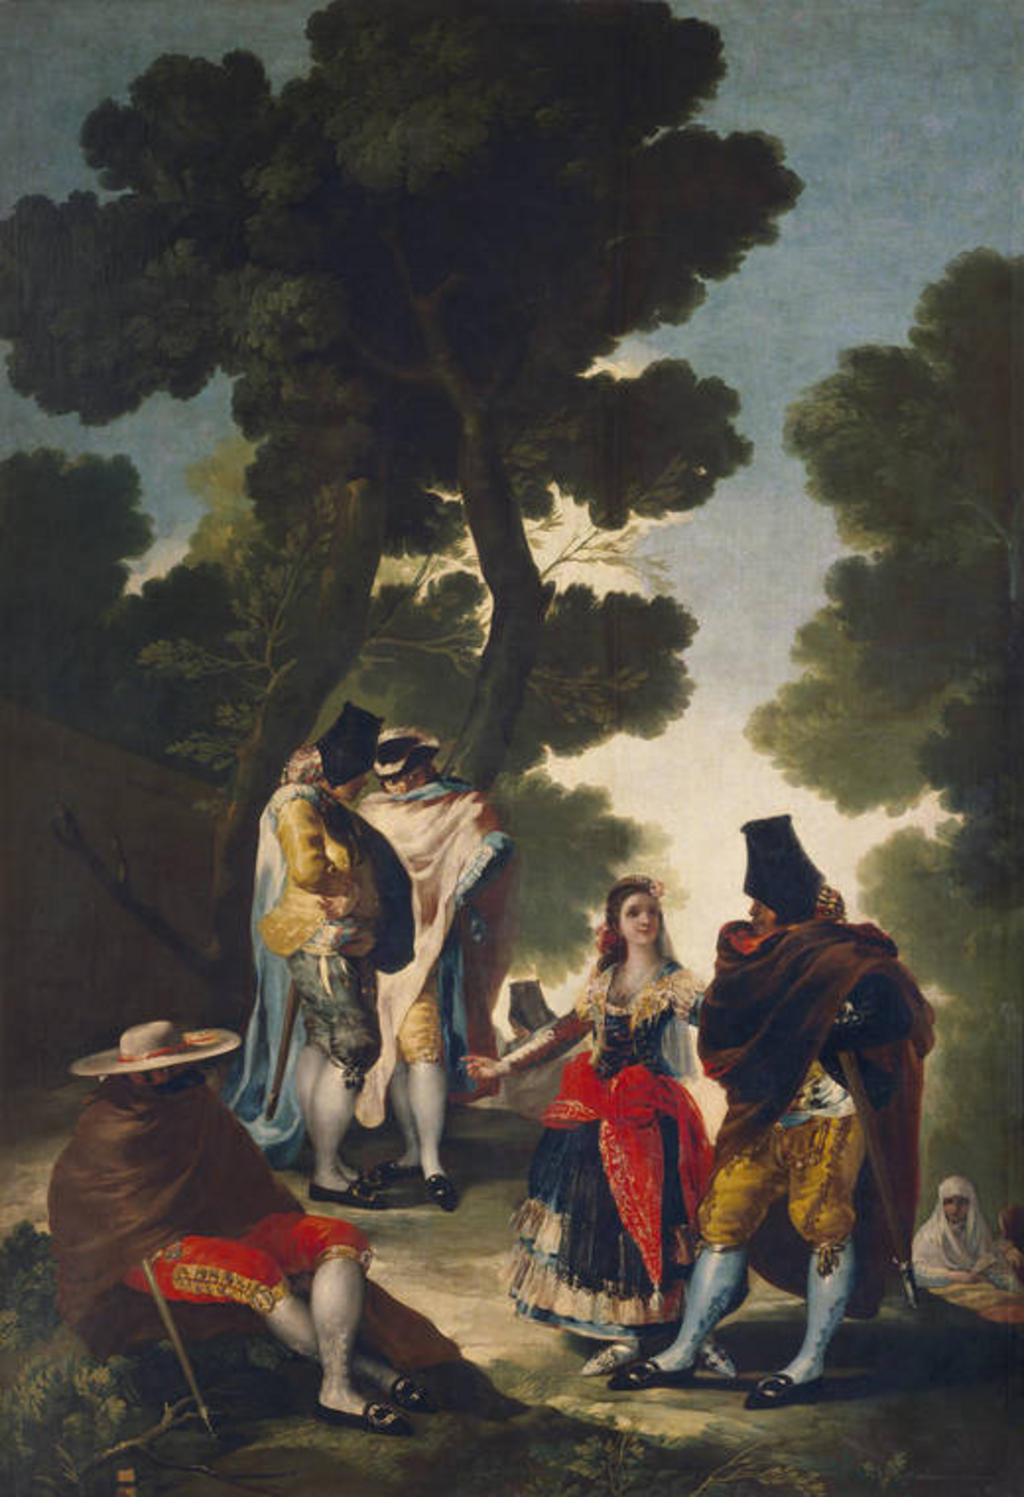 Actualmente, La maja y los embozados de Francisco de Goya, se encuentra resguardado por el Museo del Prado, en Madrid, aunque no se encuentra expuesto. (ESPECIAL)